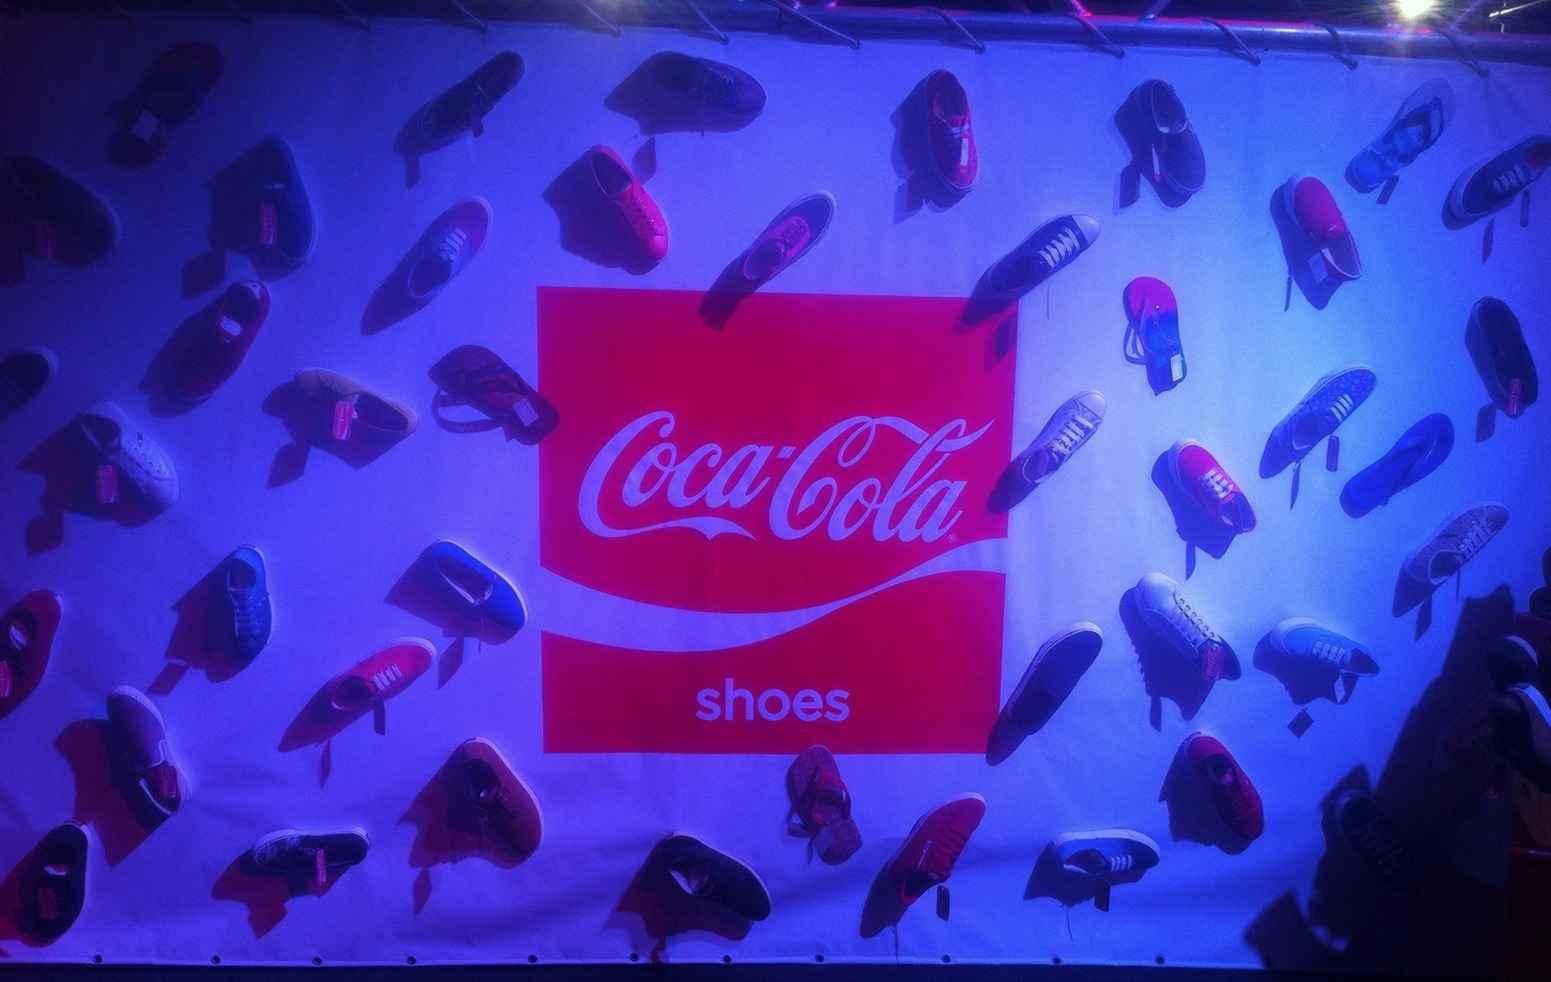 Portada de Crossover y Coca-Cola Shoes en el BAF 2015